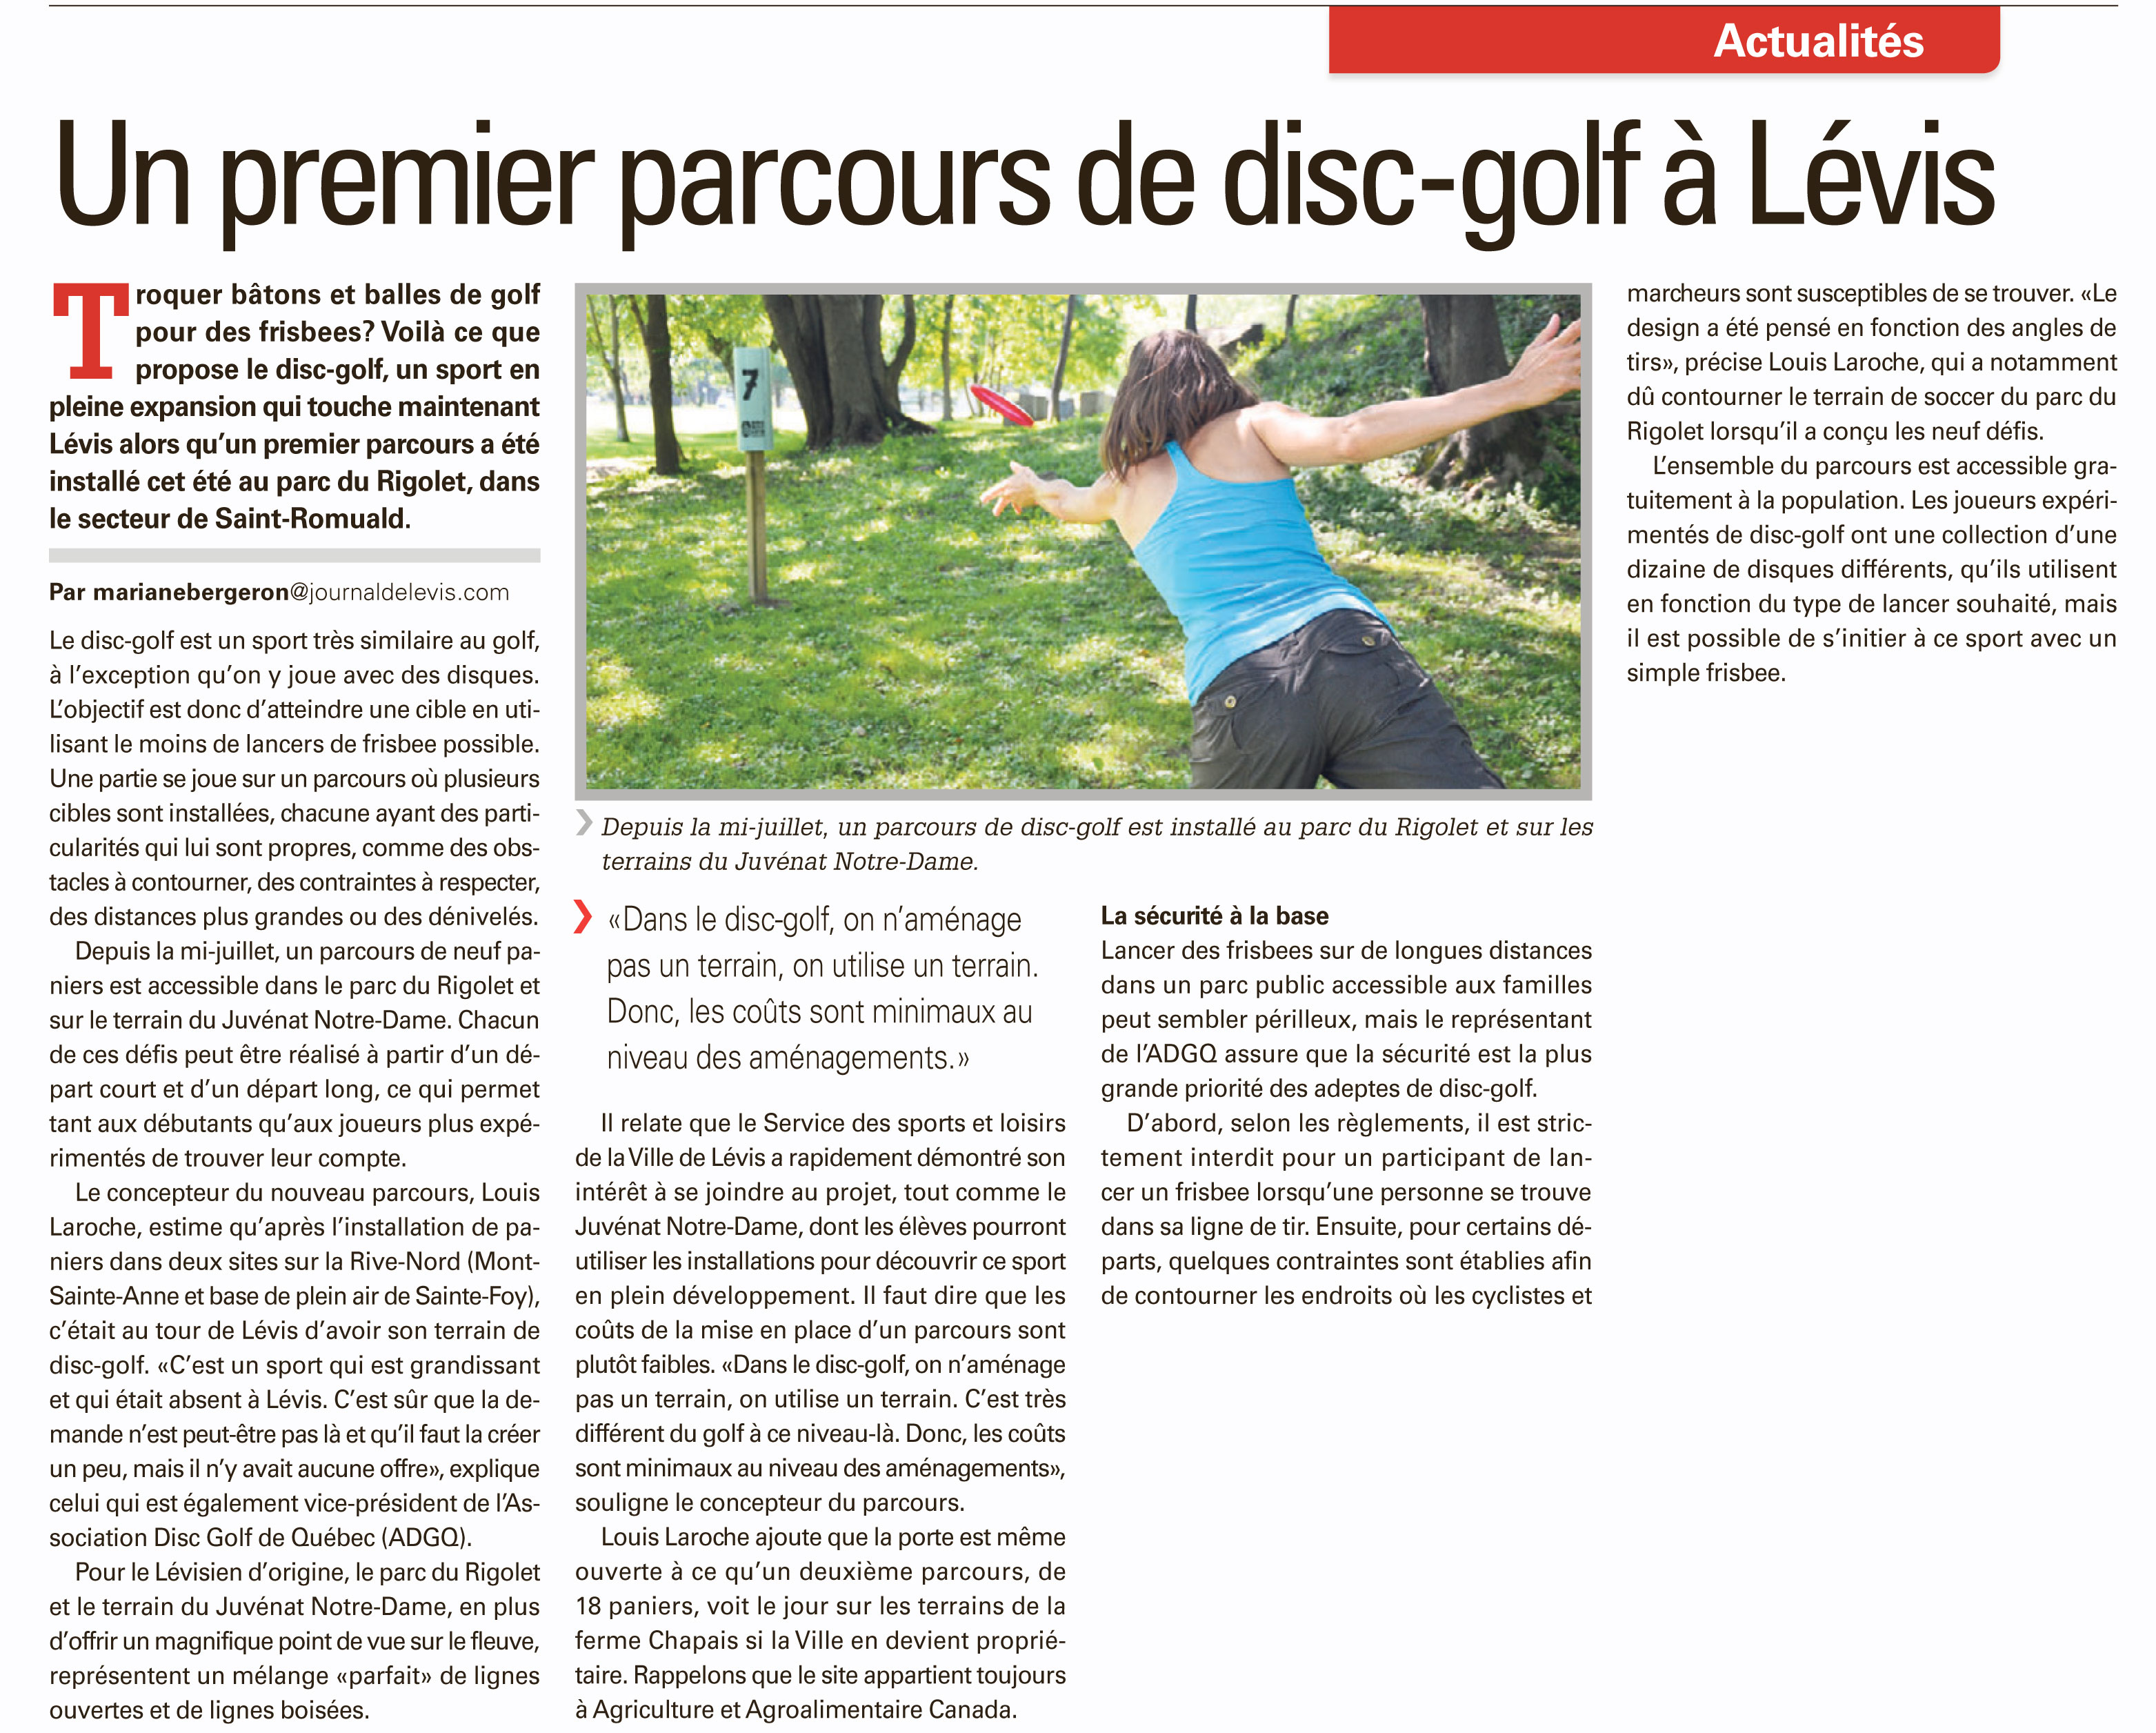 Un premier parcours de disc-golf à Lévis